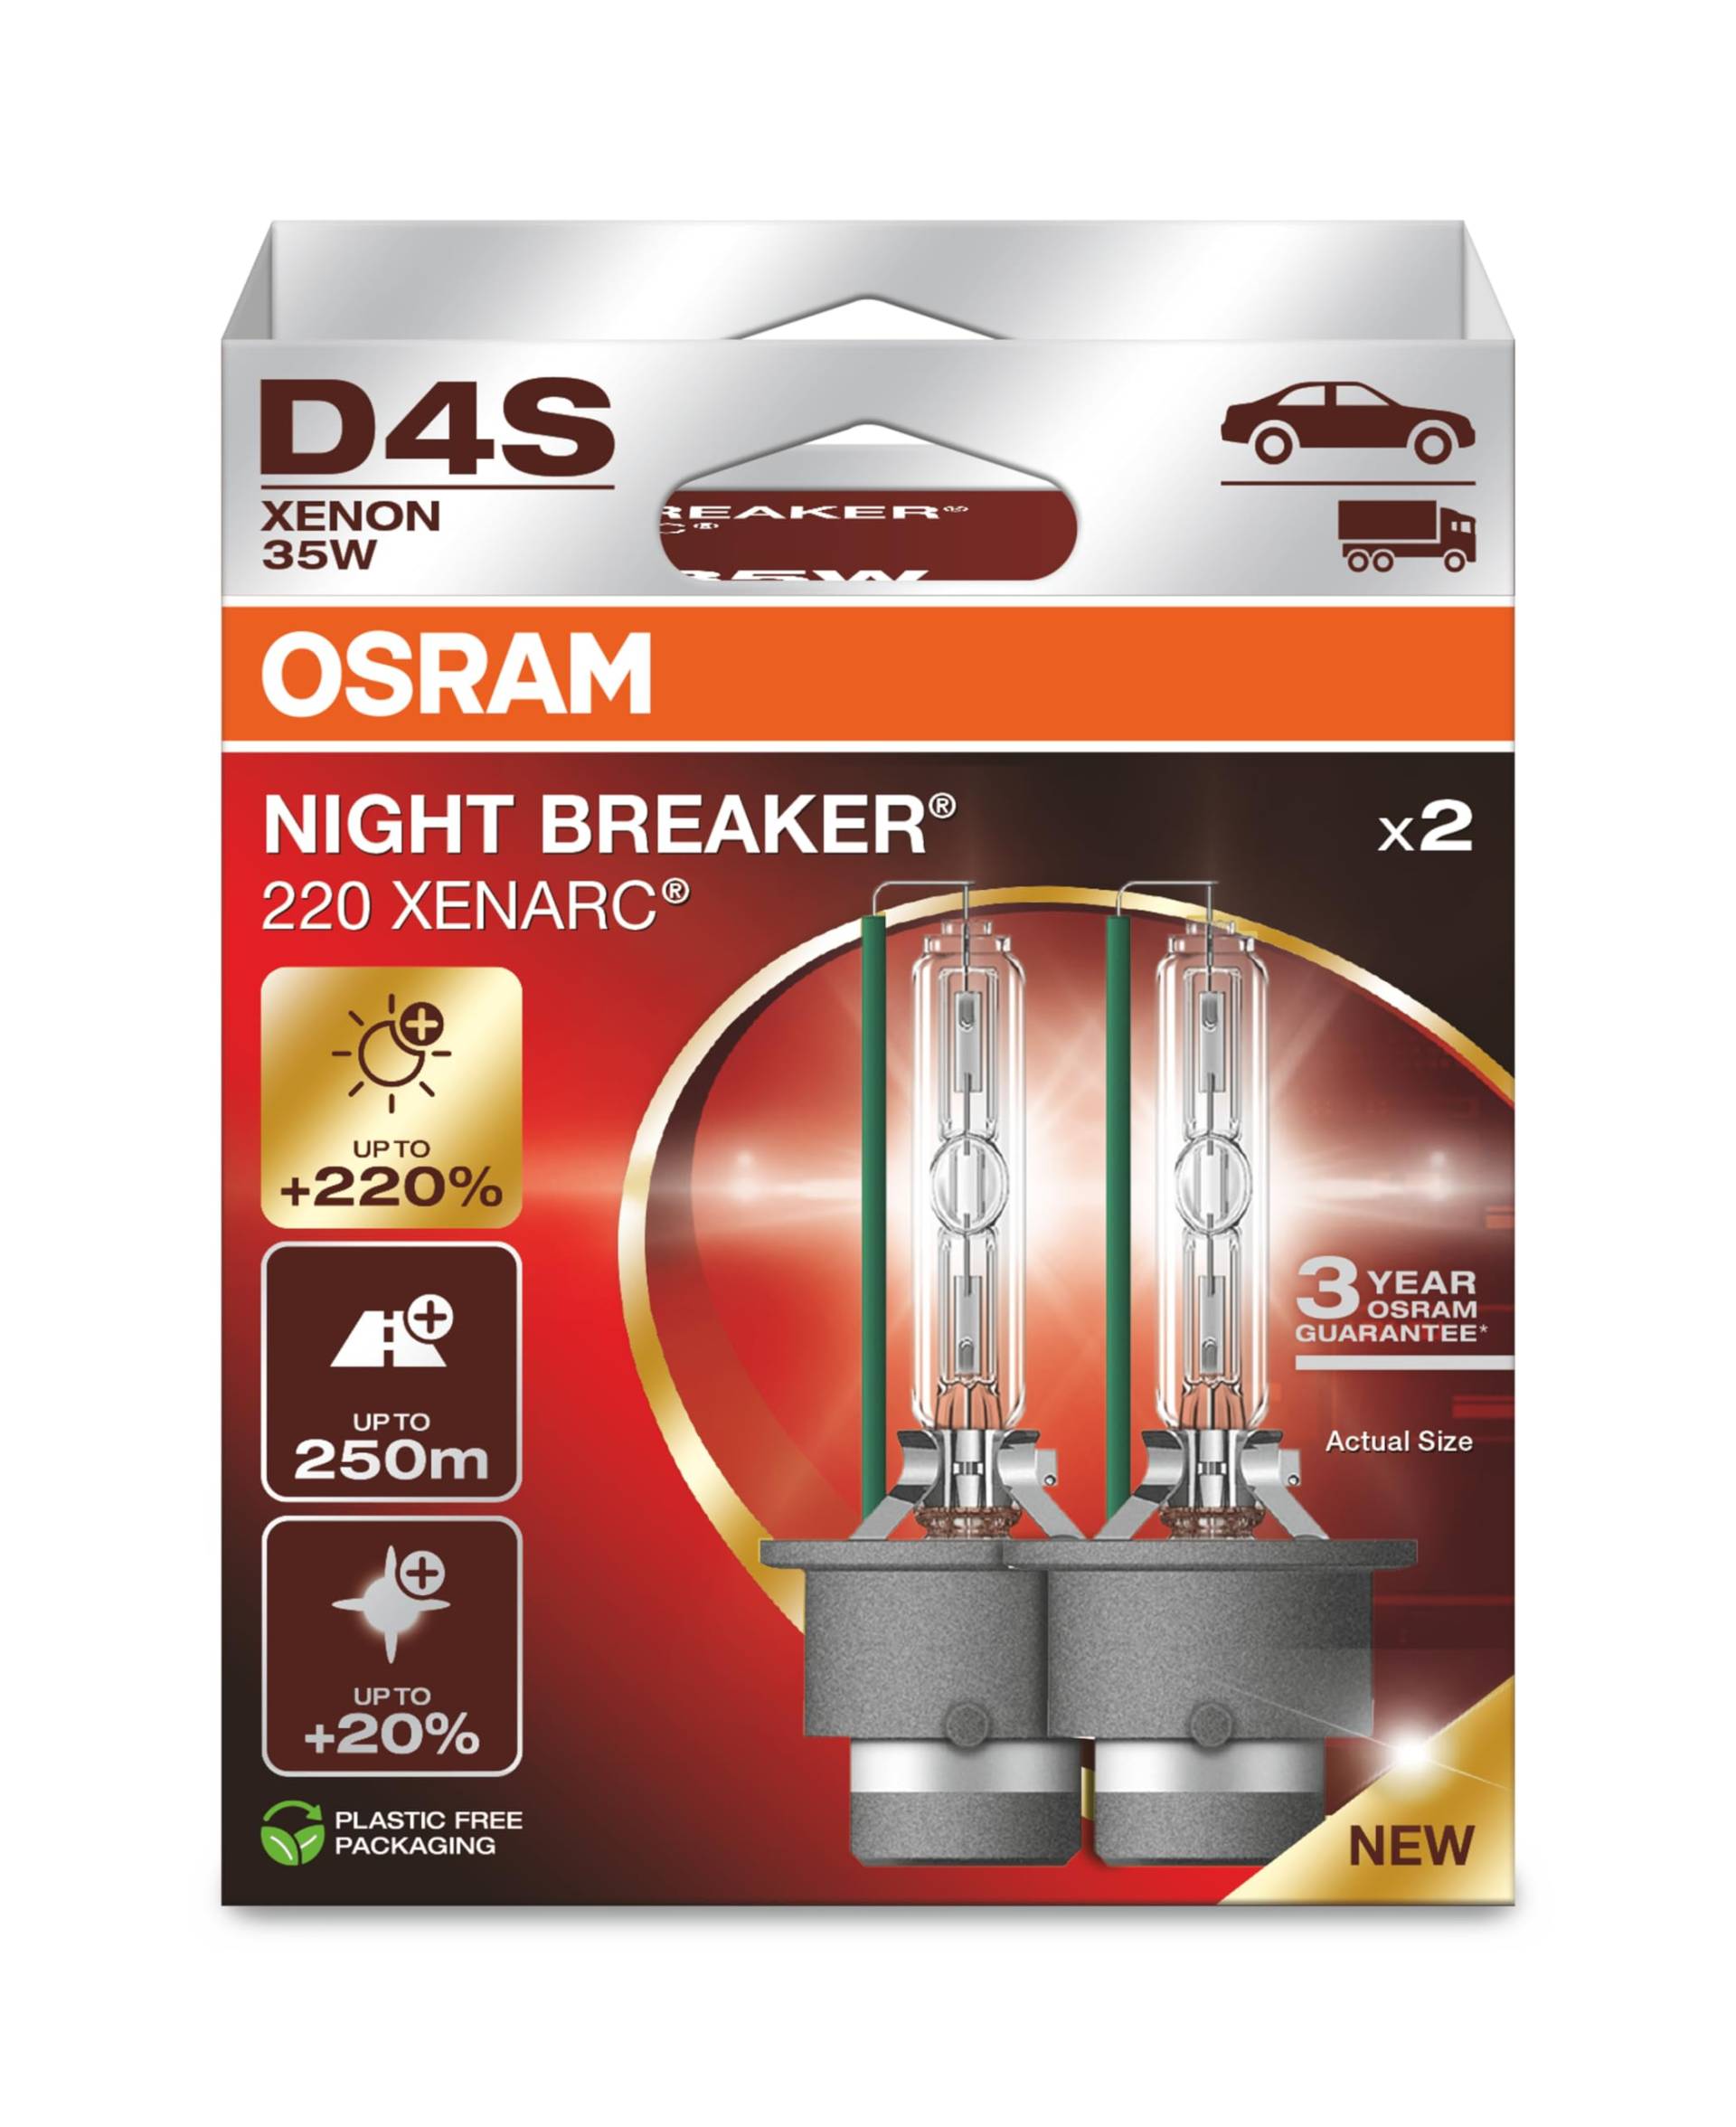 OSRAM XENARC NIGHT BREAKER 220, D4S, 220% mehr Helligkeit, Xenon-Scheinwerferlampe, 66440XN2-2HB, Faltschachtel (2 Lampen) von Osram